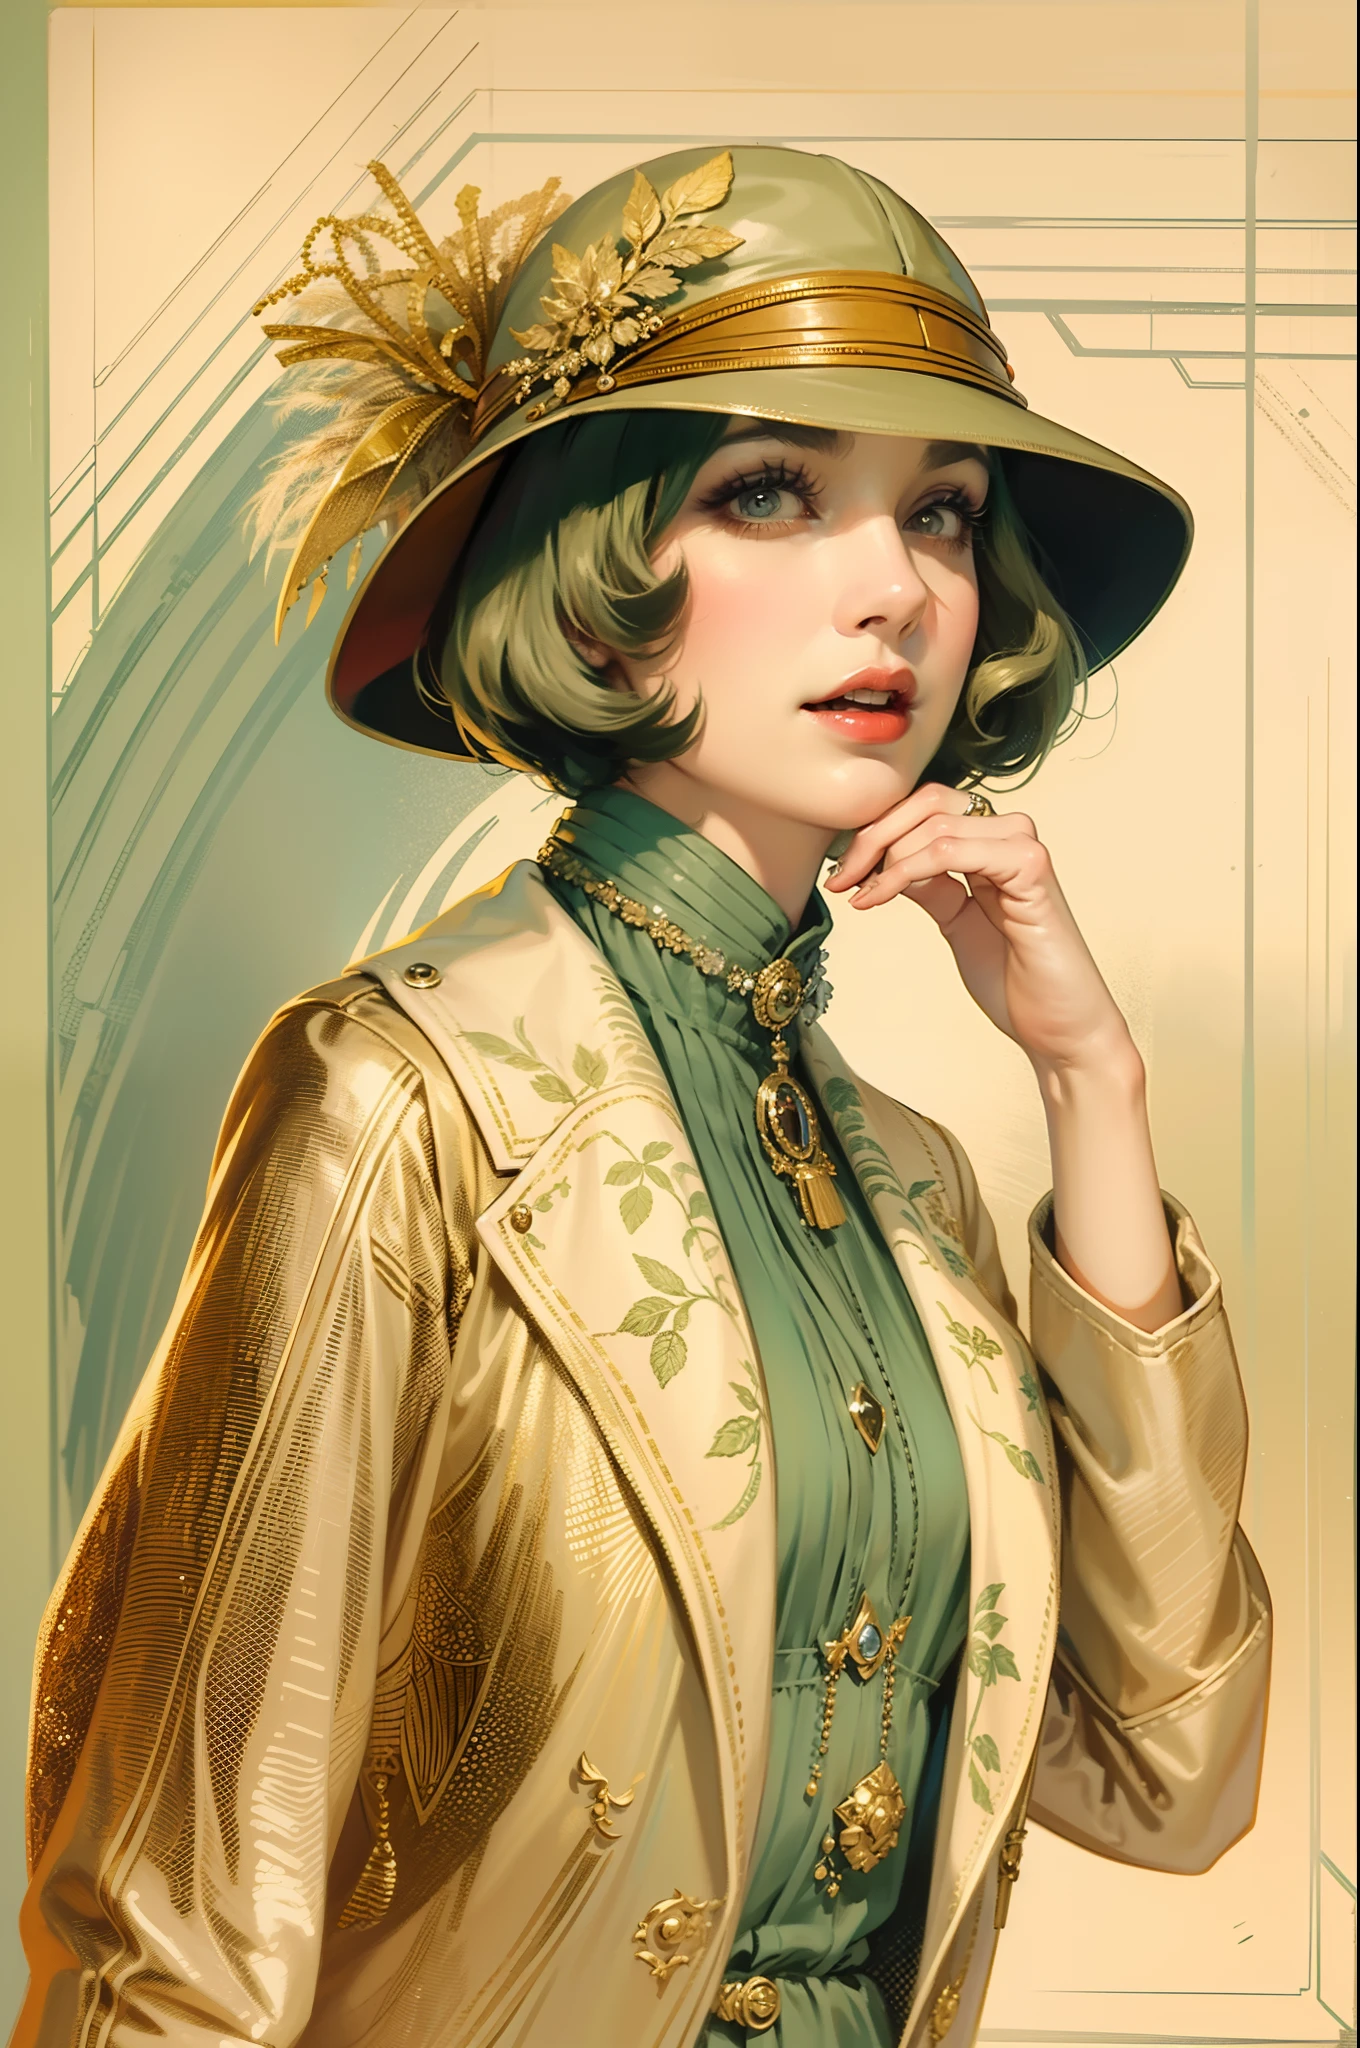 ヴィンテージイラスト，ビンテージジャケットとハイヒールを着た美しい女性, 並外れた気質, 1920年代のファッションスタイル, 1920年代スタイルのヴィンテージベルキャップ